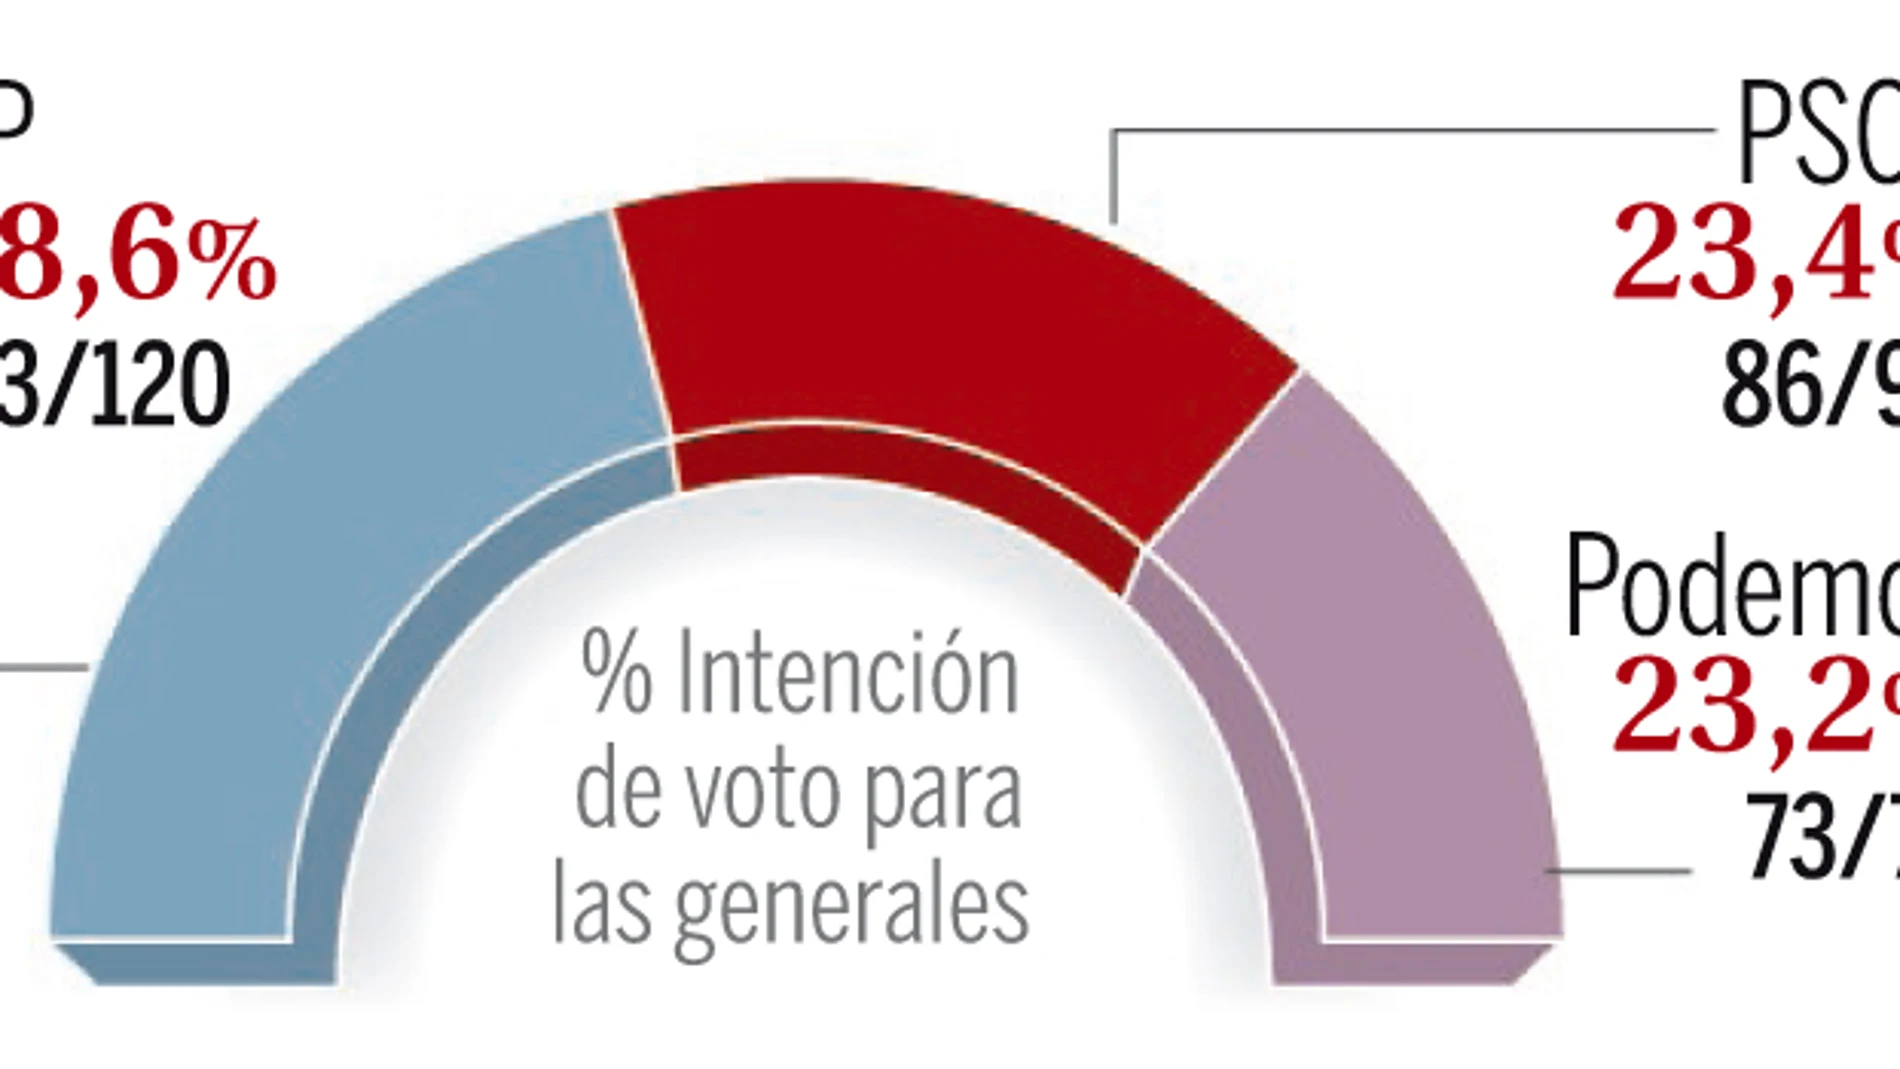 El PP se consolida como primera fuerza y Podemos fagocita al PSOE